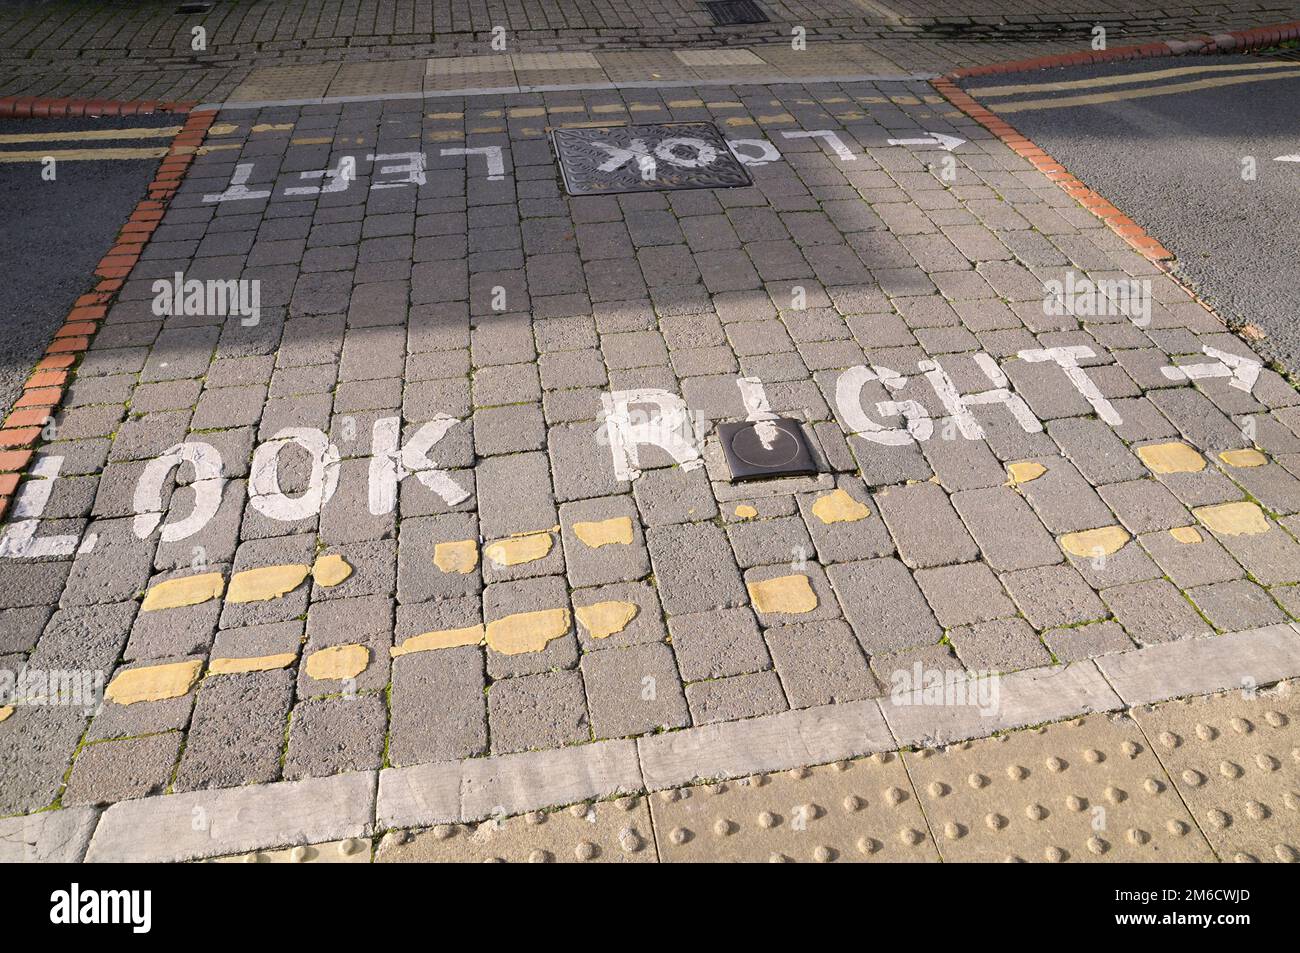 Détail des marquages routiers look right et look left peints sur un passage à niveau pour piétons du Royaume-Uni Banque D'Images